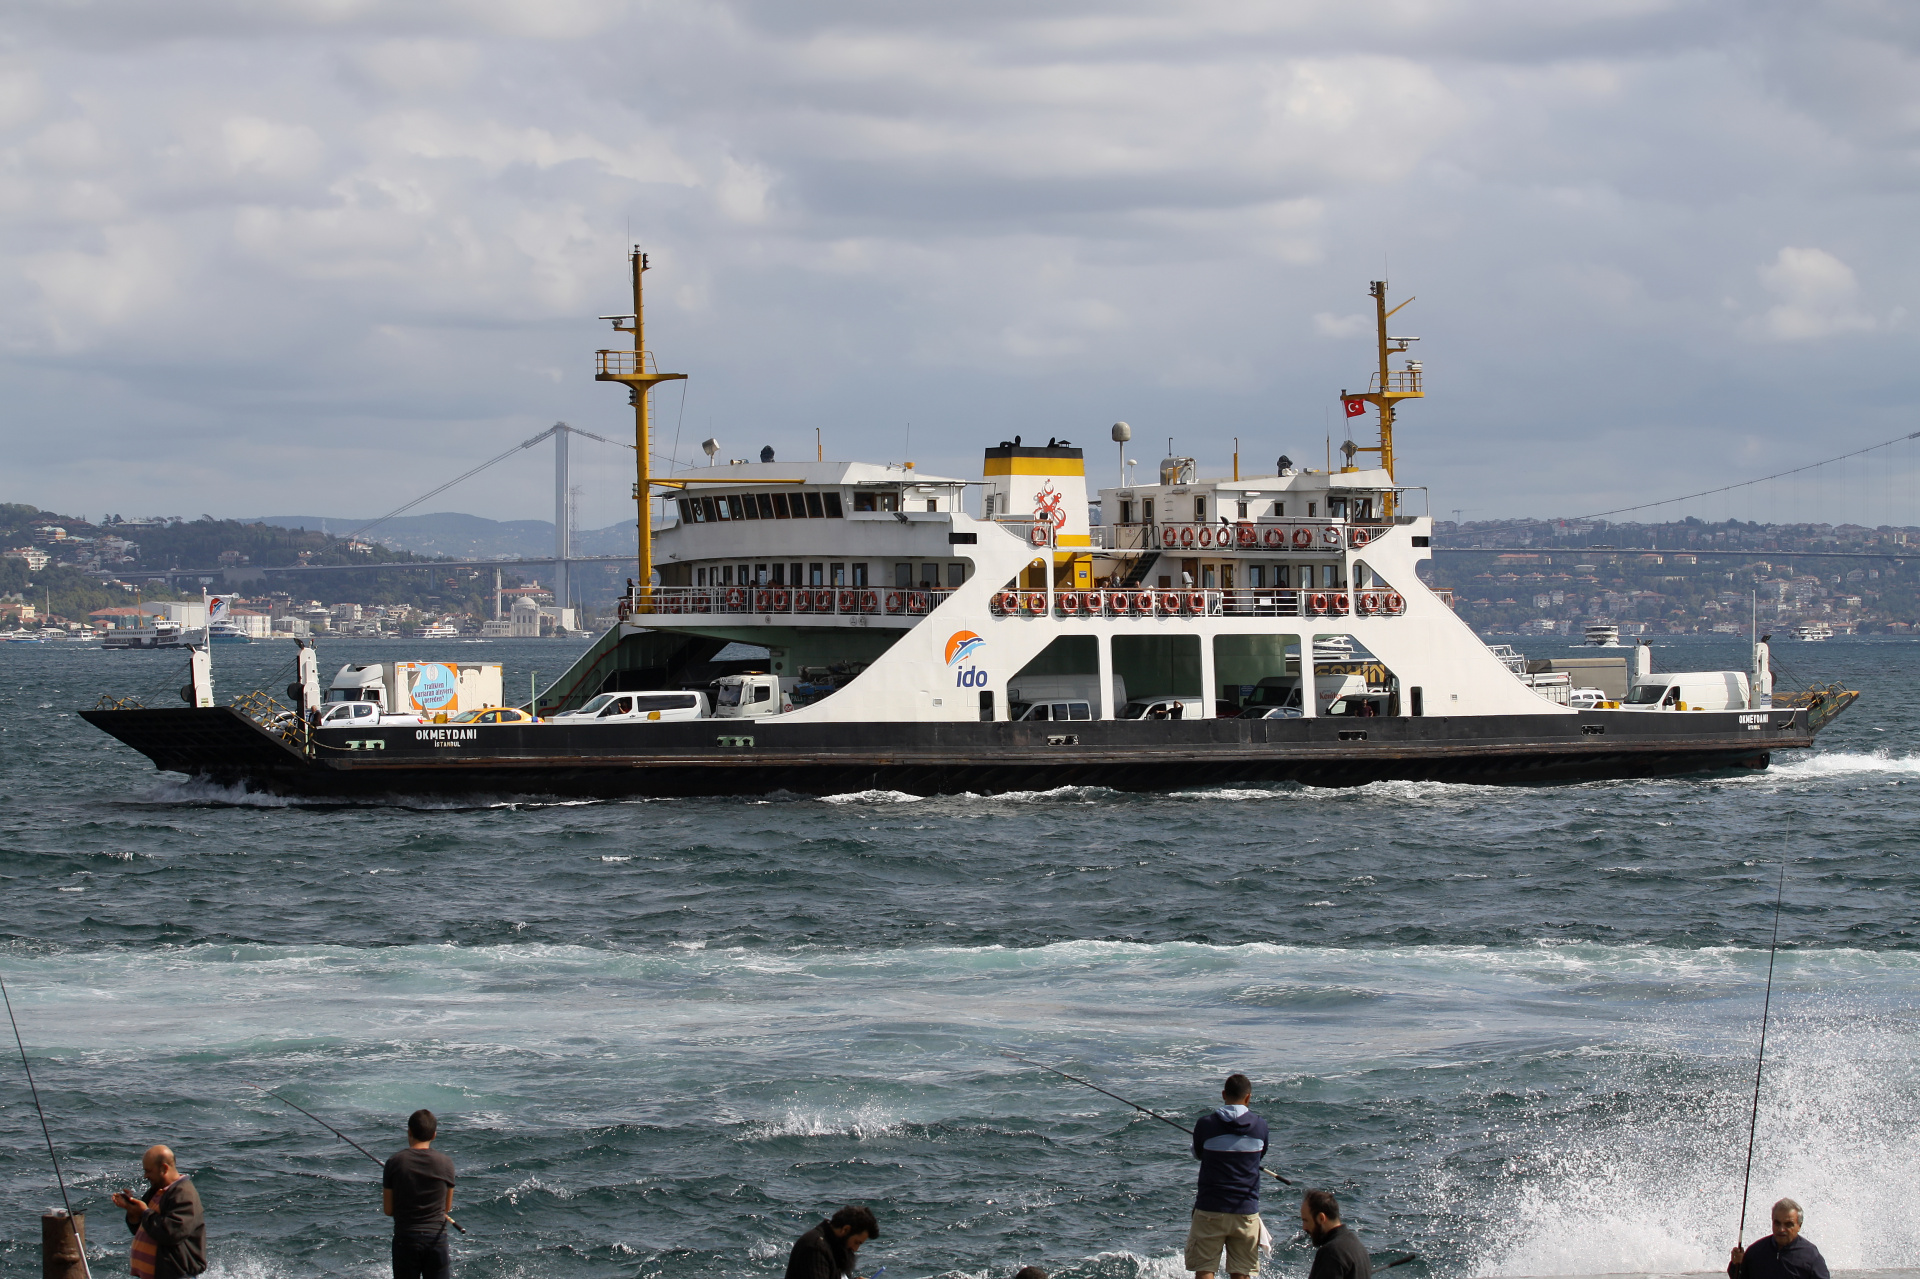 Okmeydani (Travels » Istanbul » Bosphorus » Ships and boats)